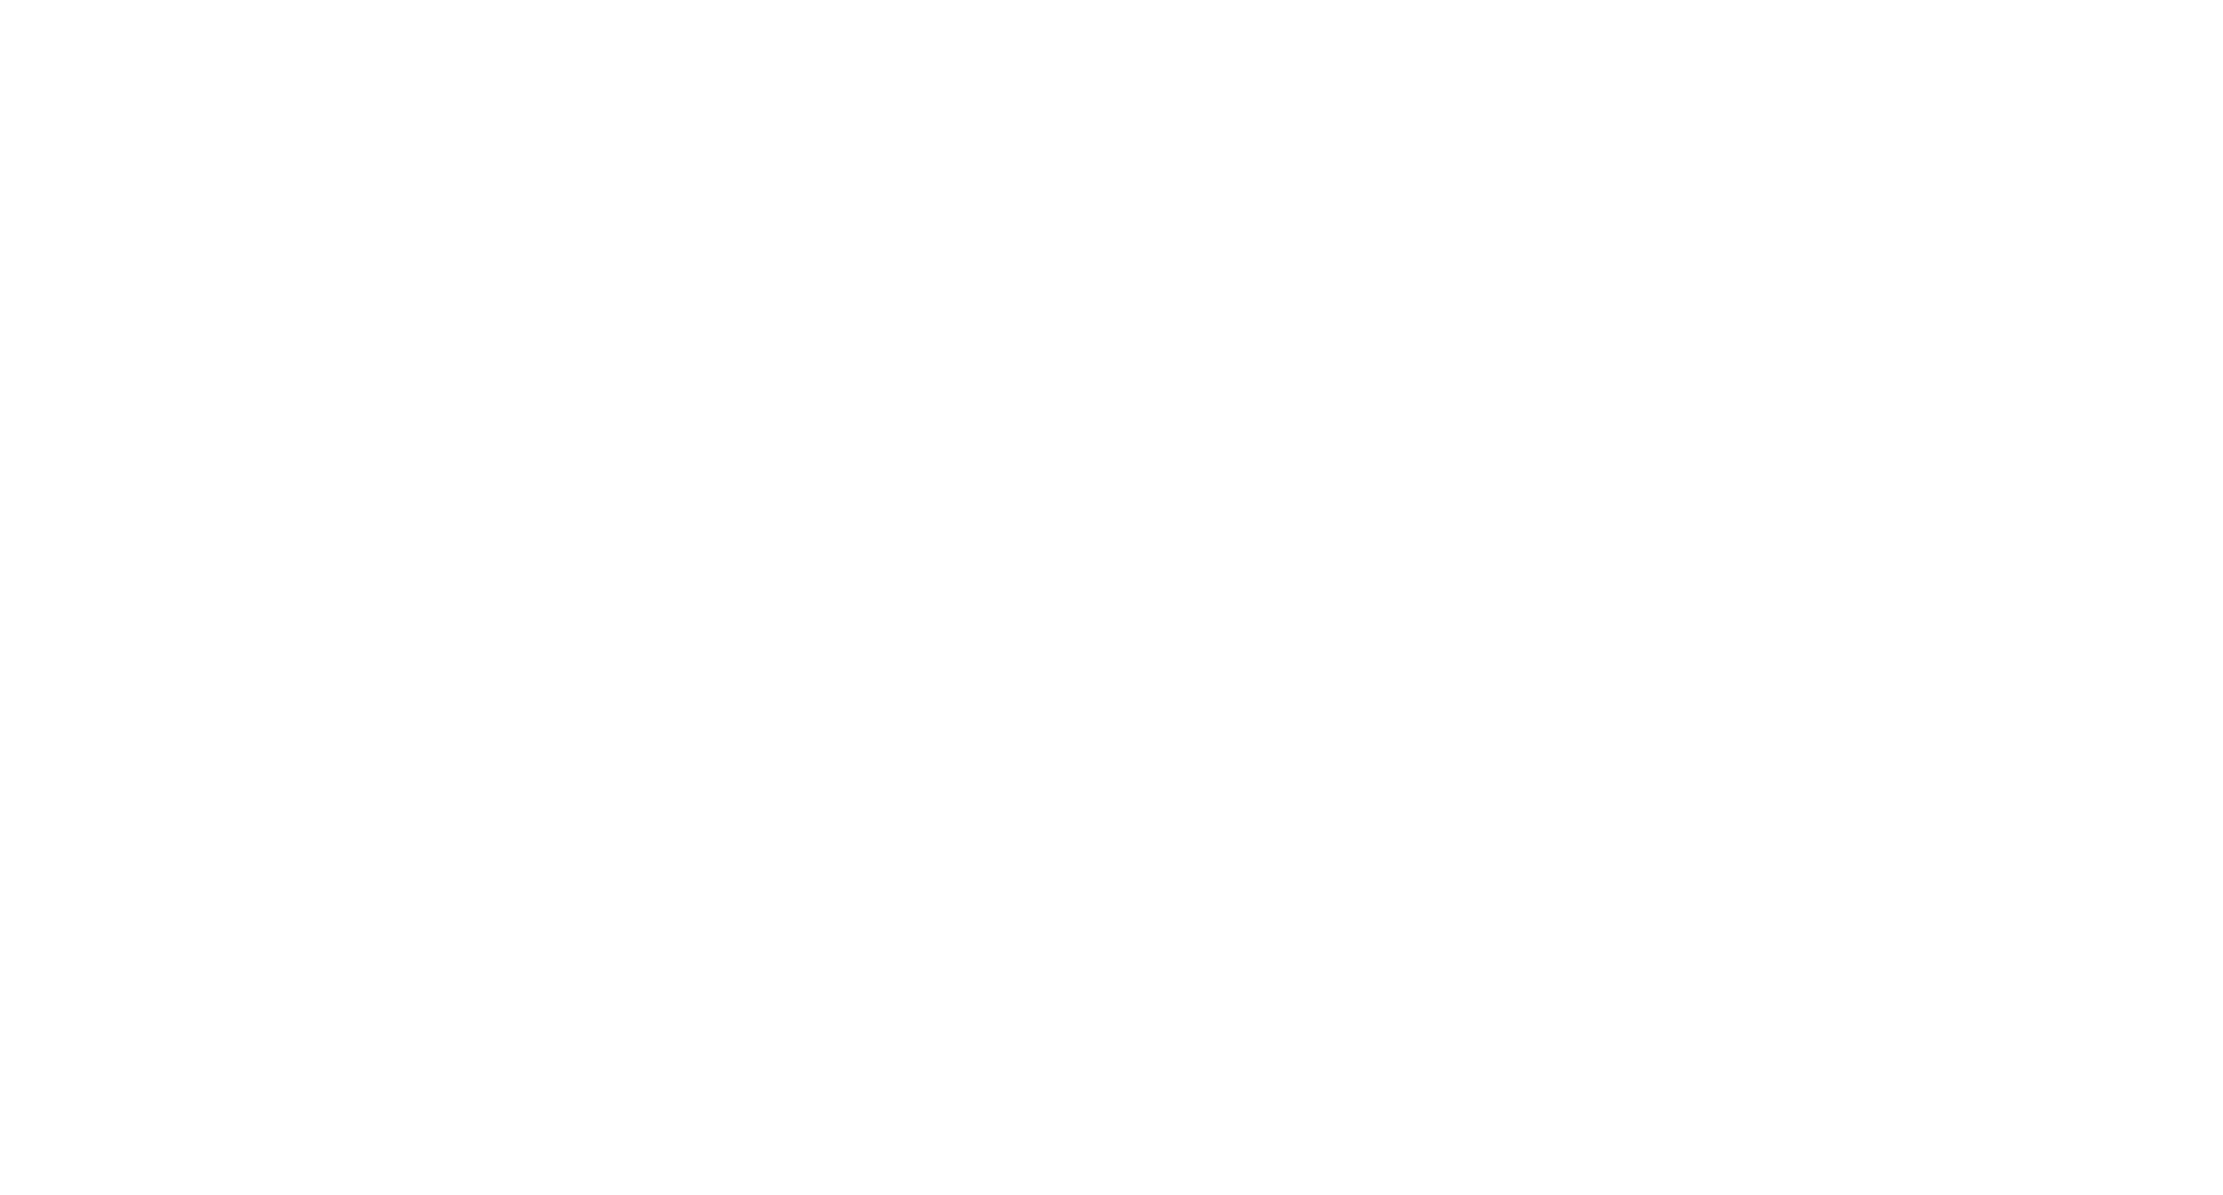 NL Turismo